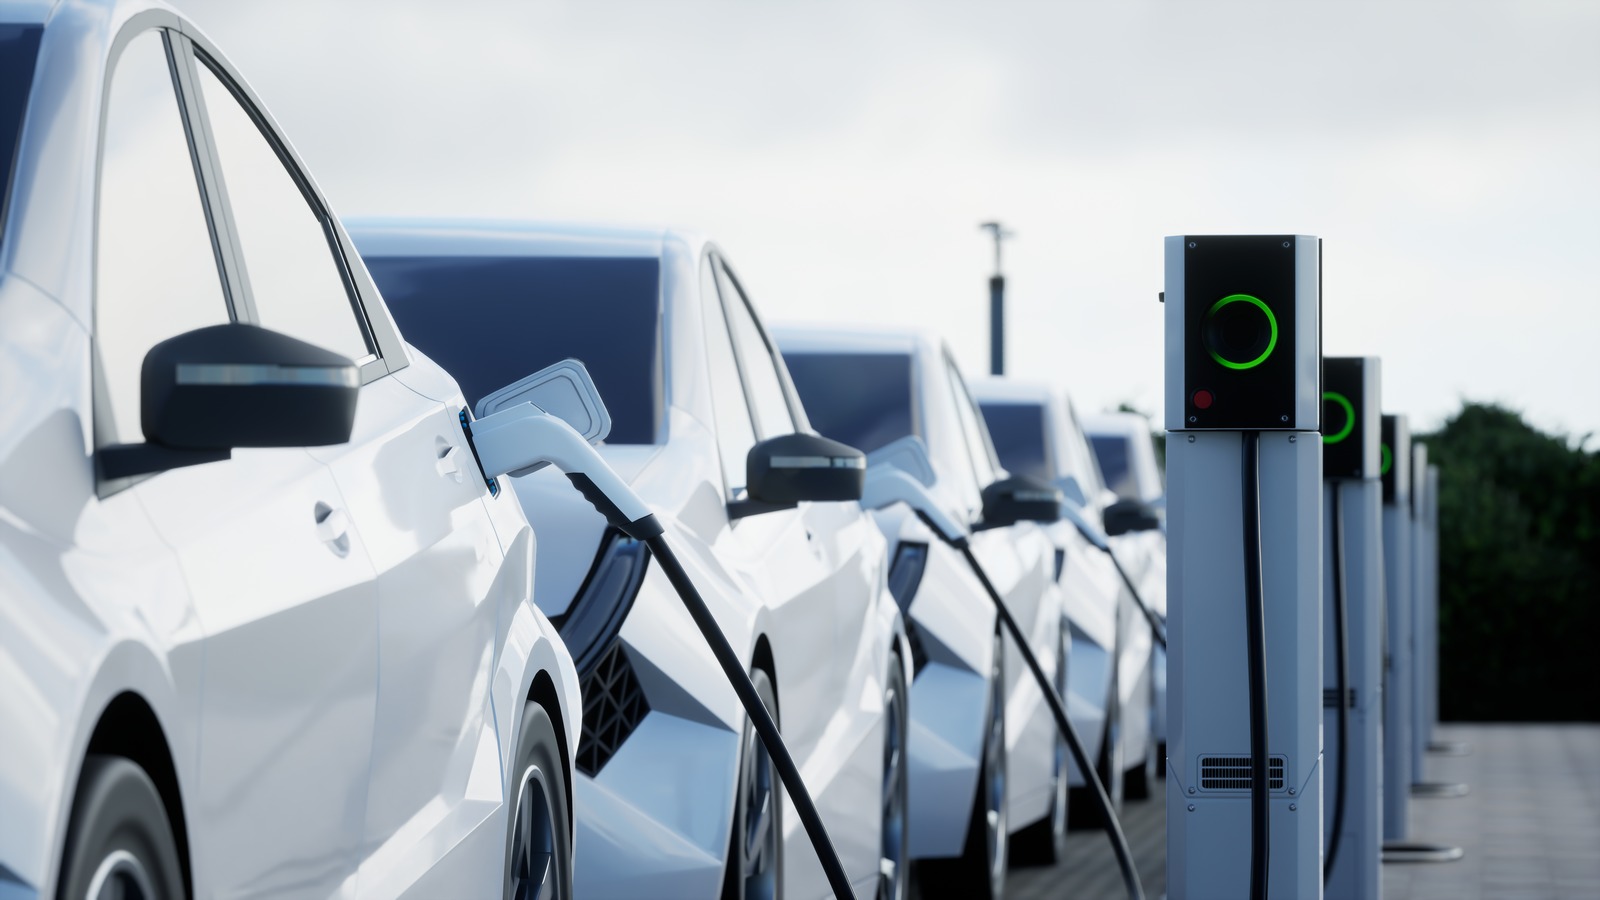 Los grandes incentivos gubernamentales podrían en realidad estar perjudicando la adopción de vehículos eléctricos